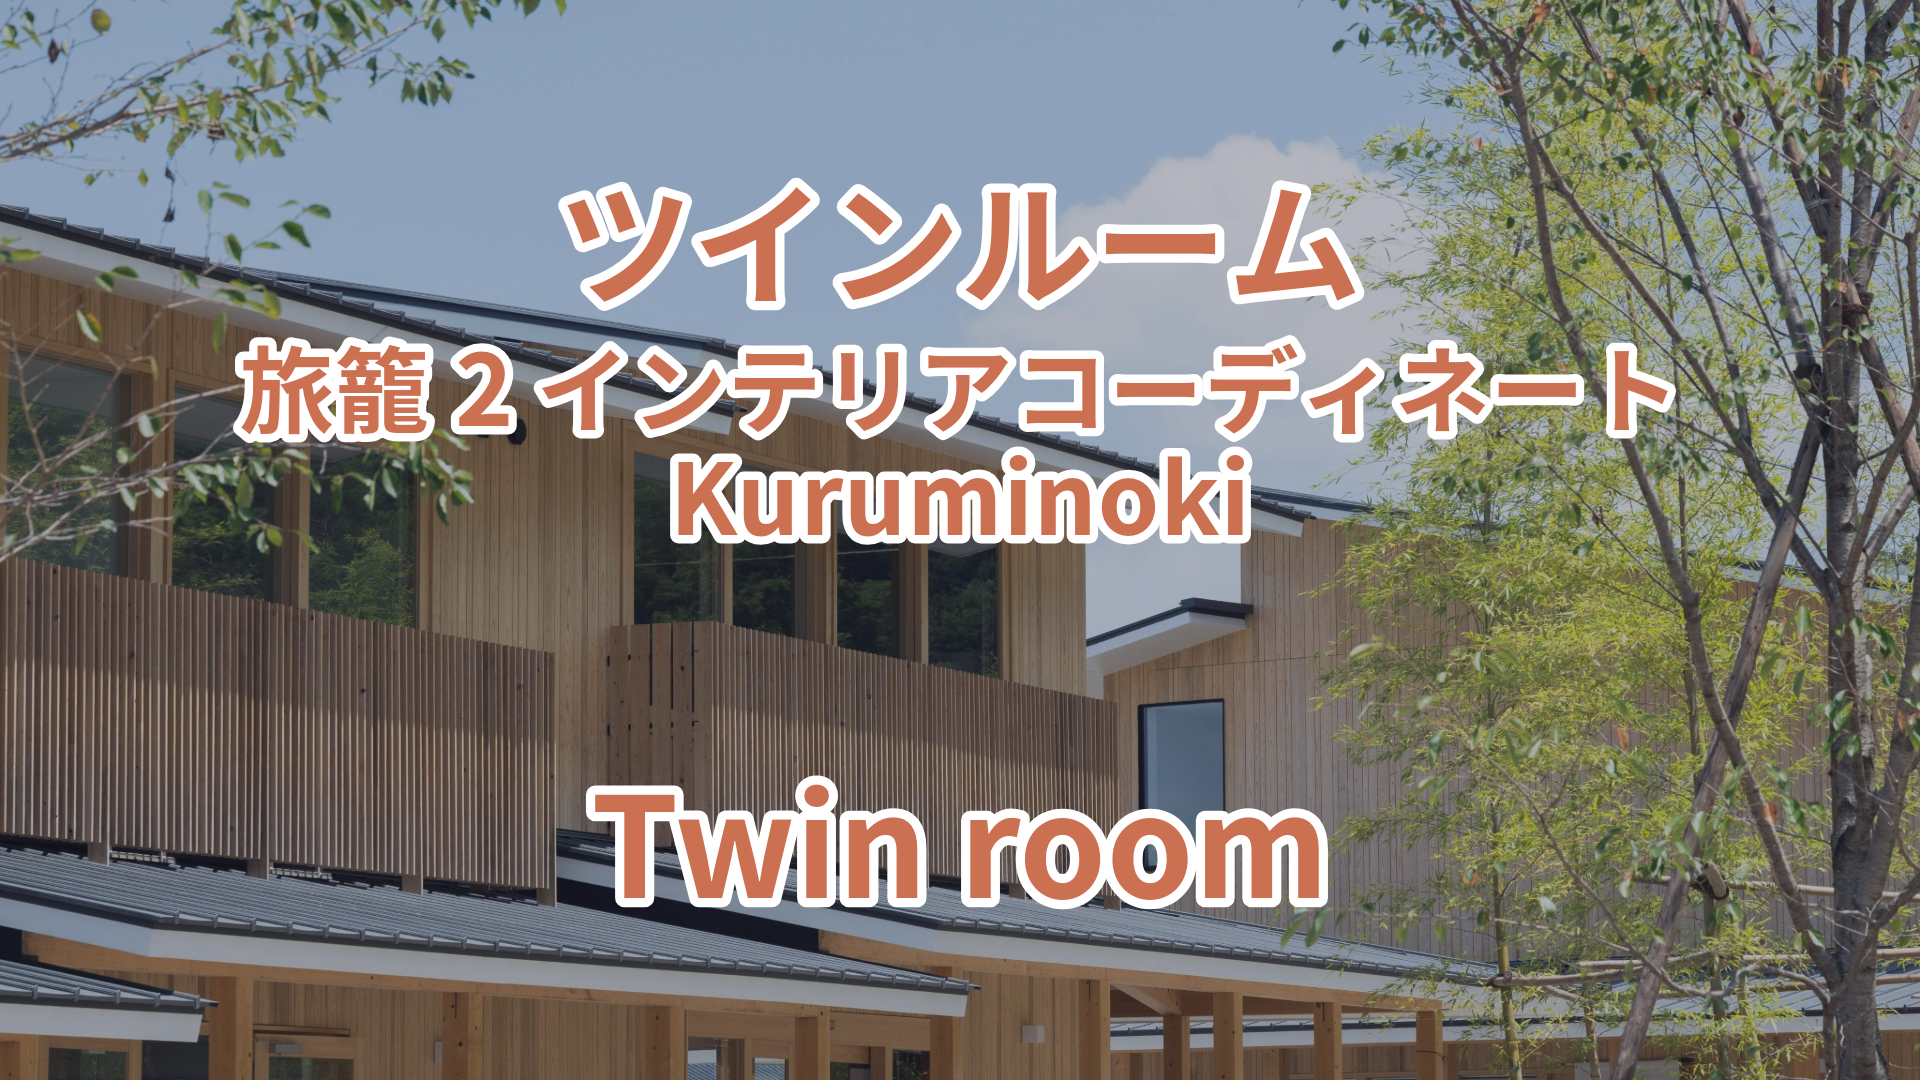 ツインルーム 旅籠2 インテリアコーディネート Kuruminoki